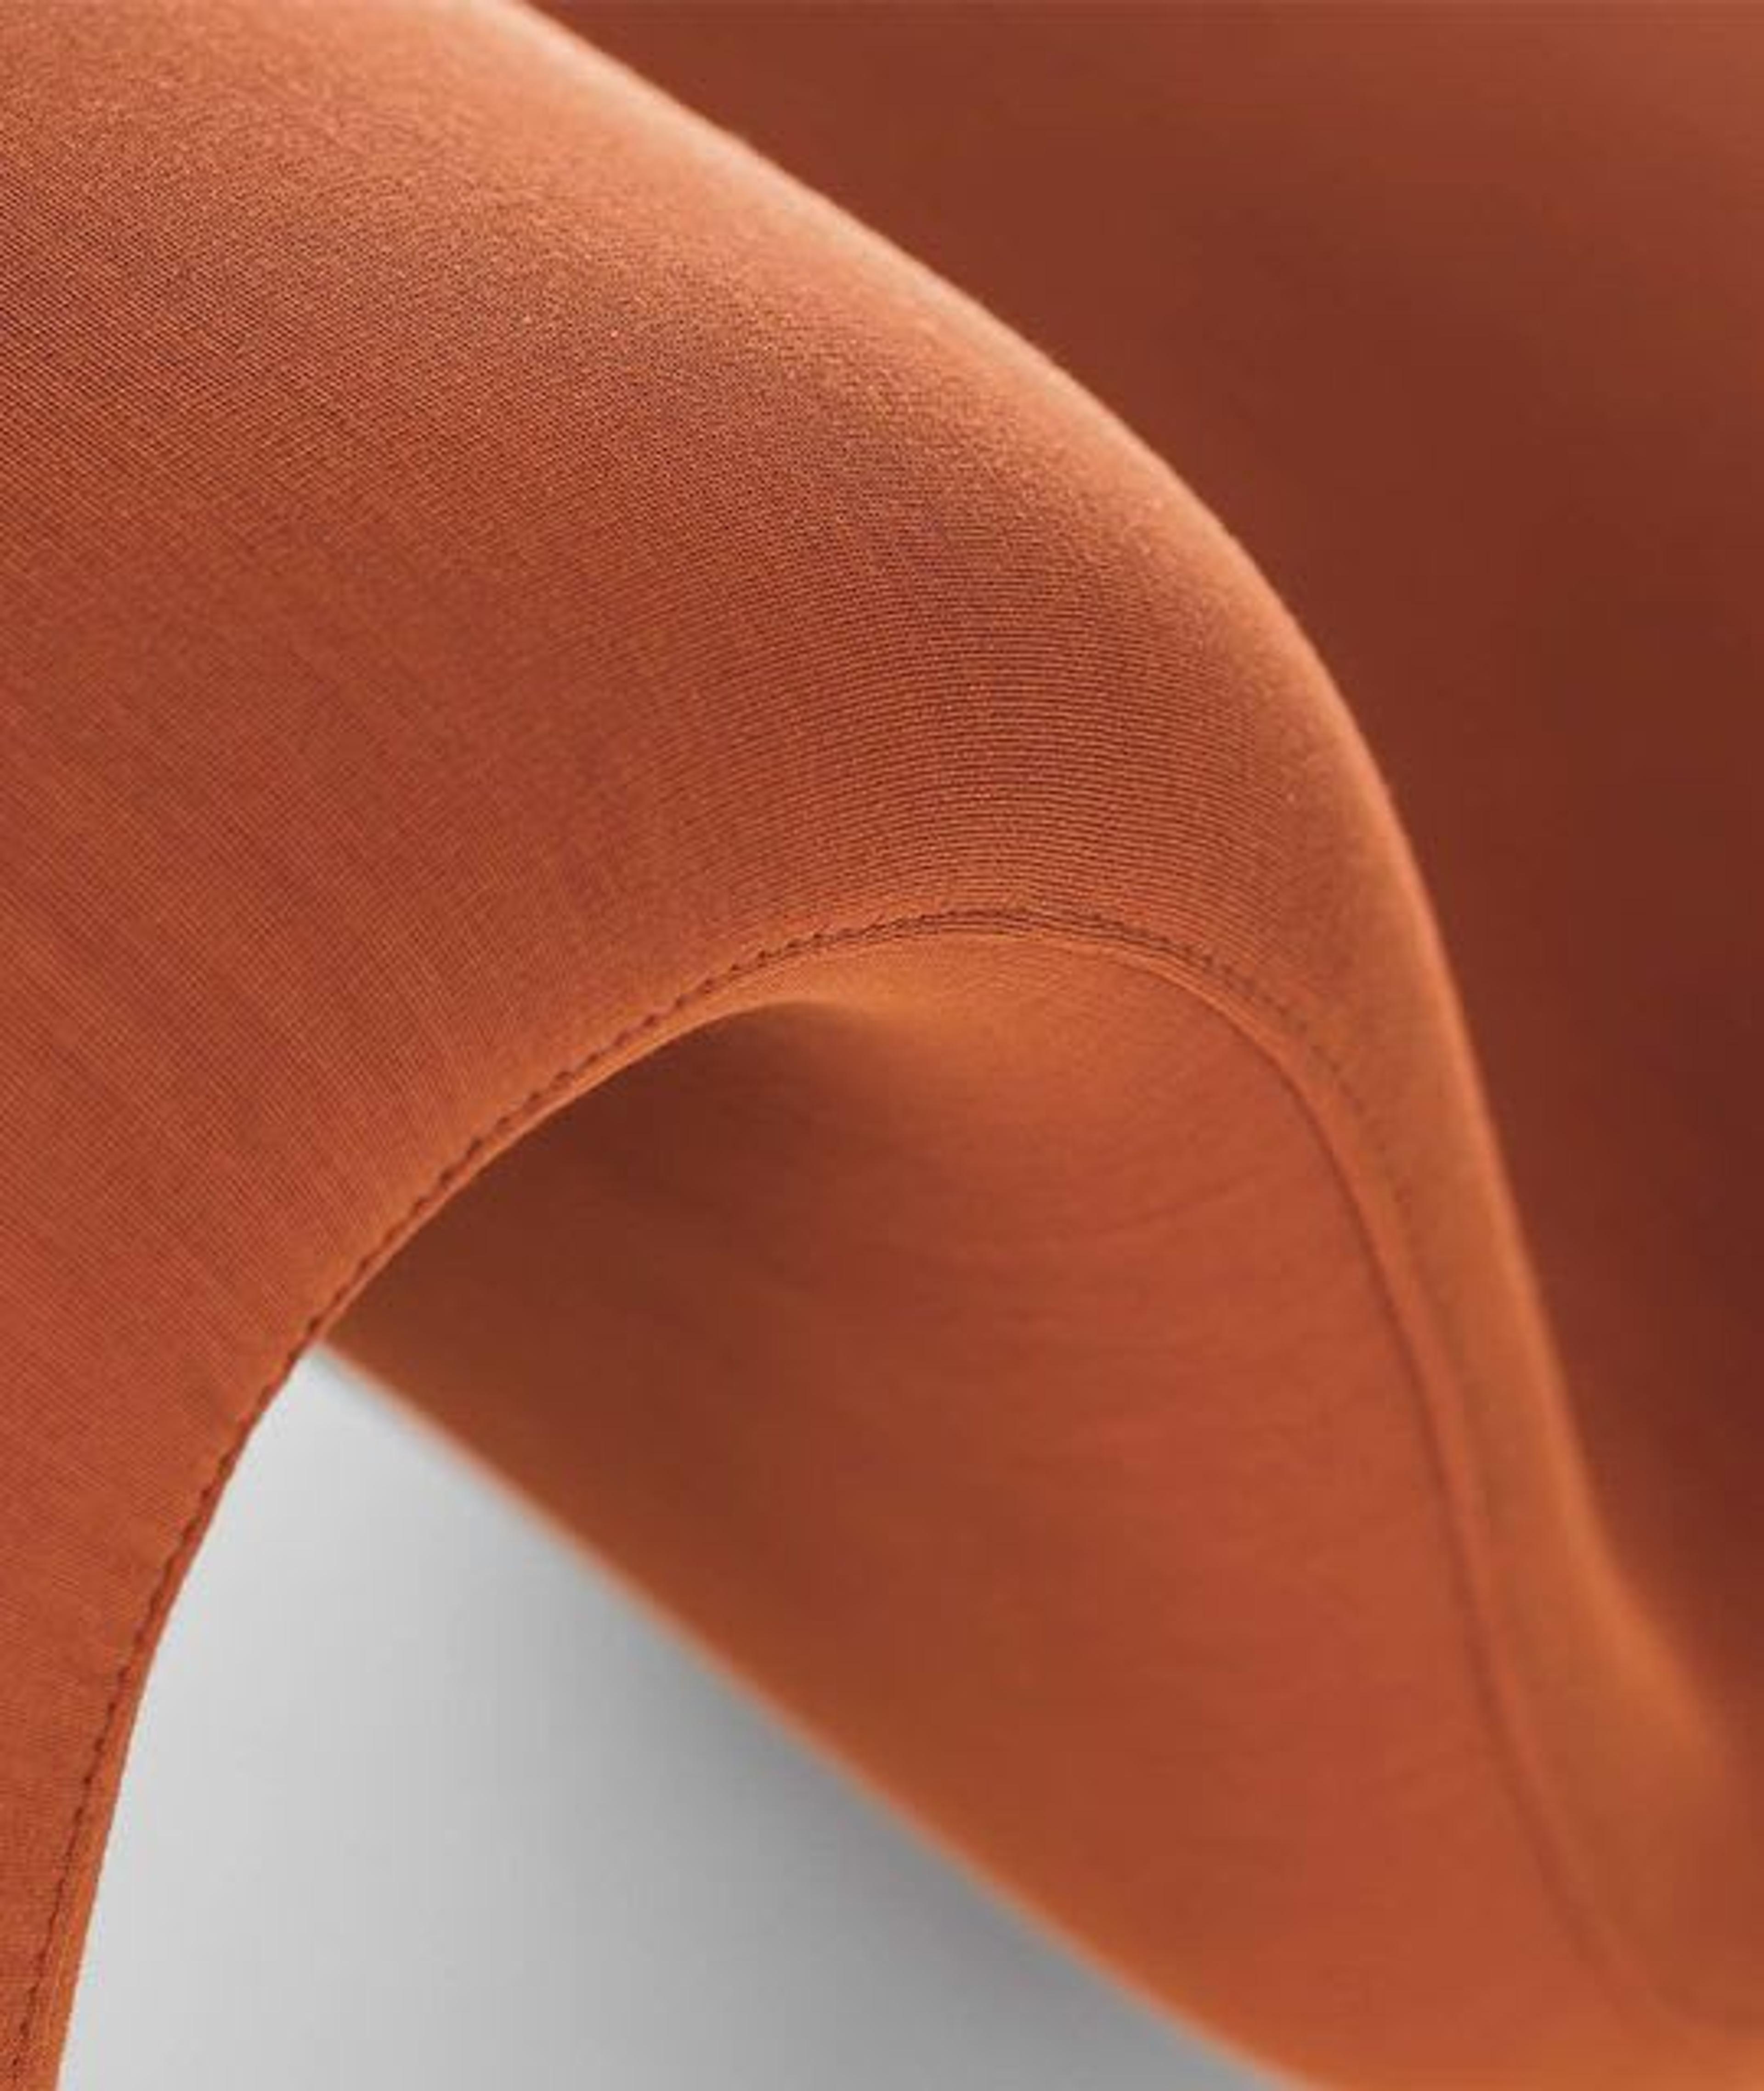 Detalles curvados de la silla doble naranja Dos à Dos Louvre de La Cividina